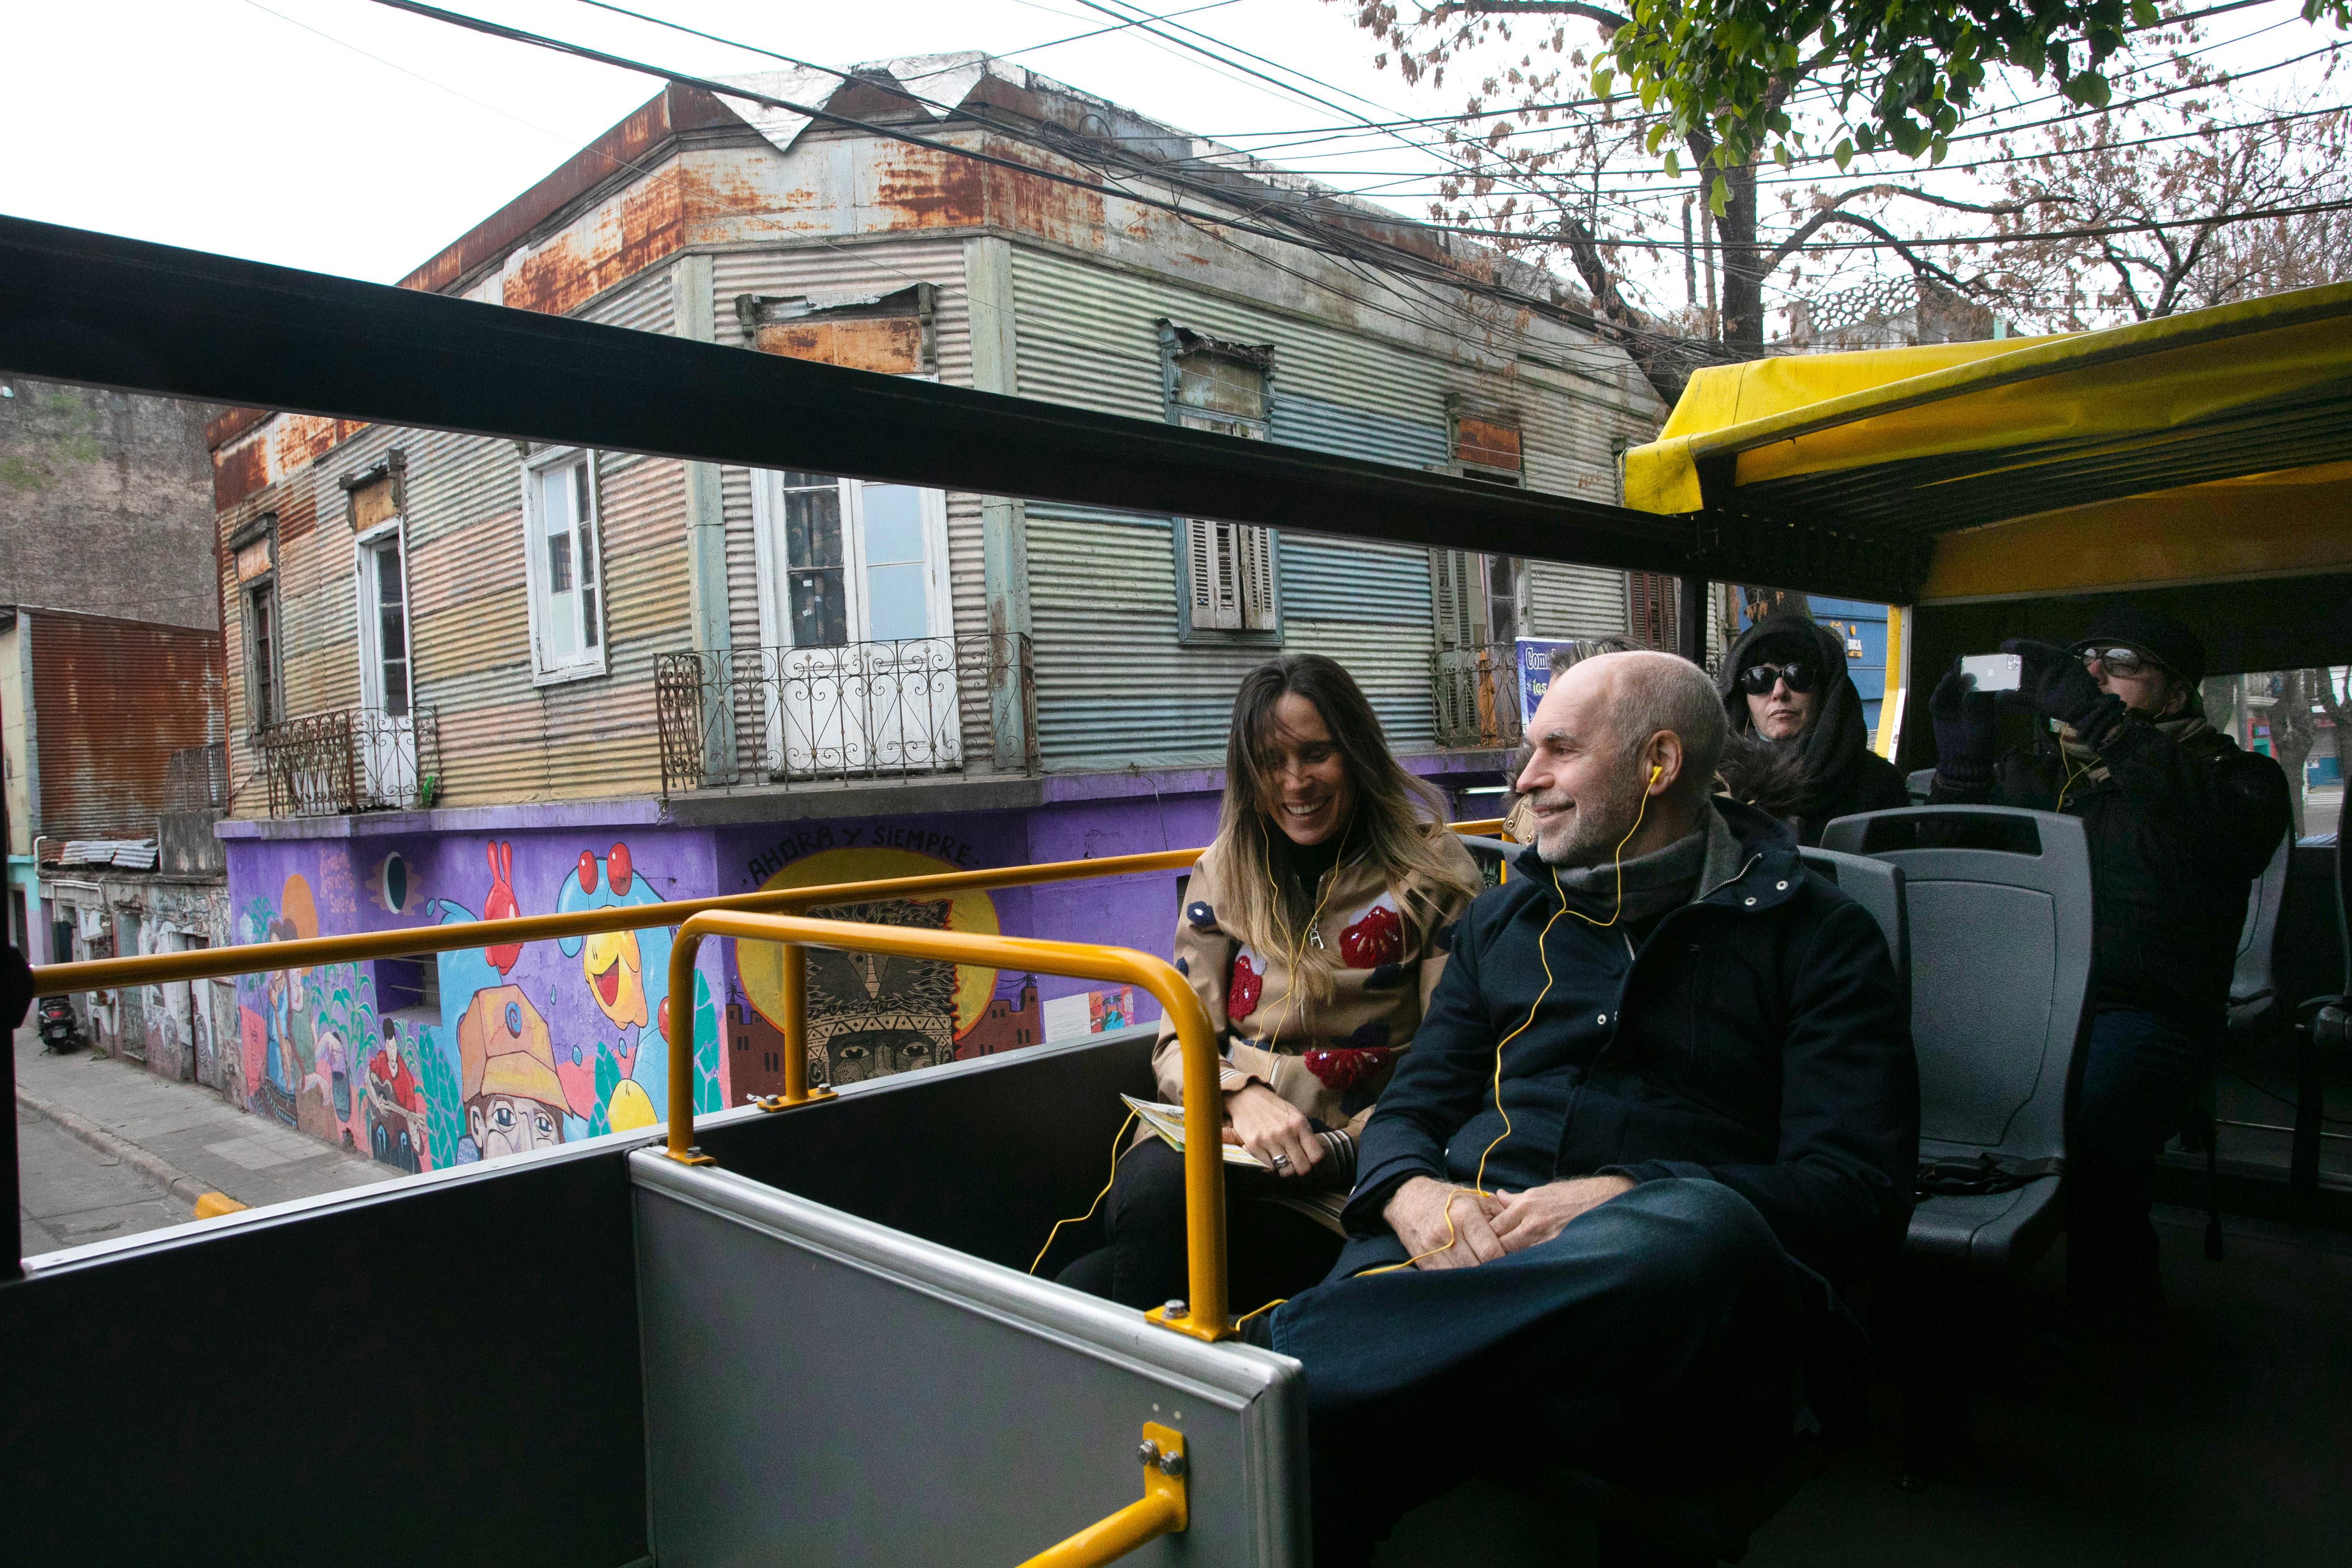 El Bus turístico, un paseo ideal para disfrutar de Buenos Aires